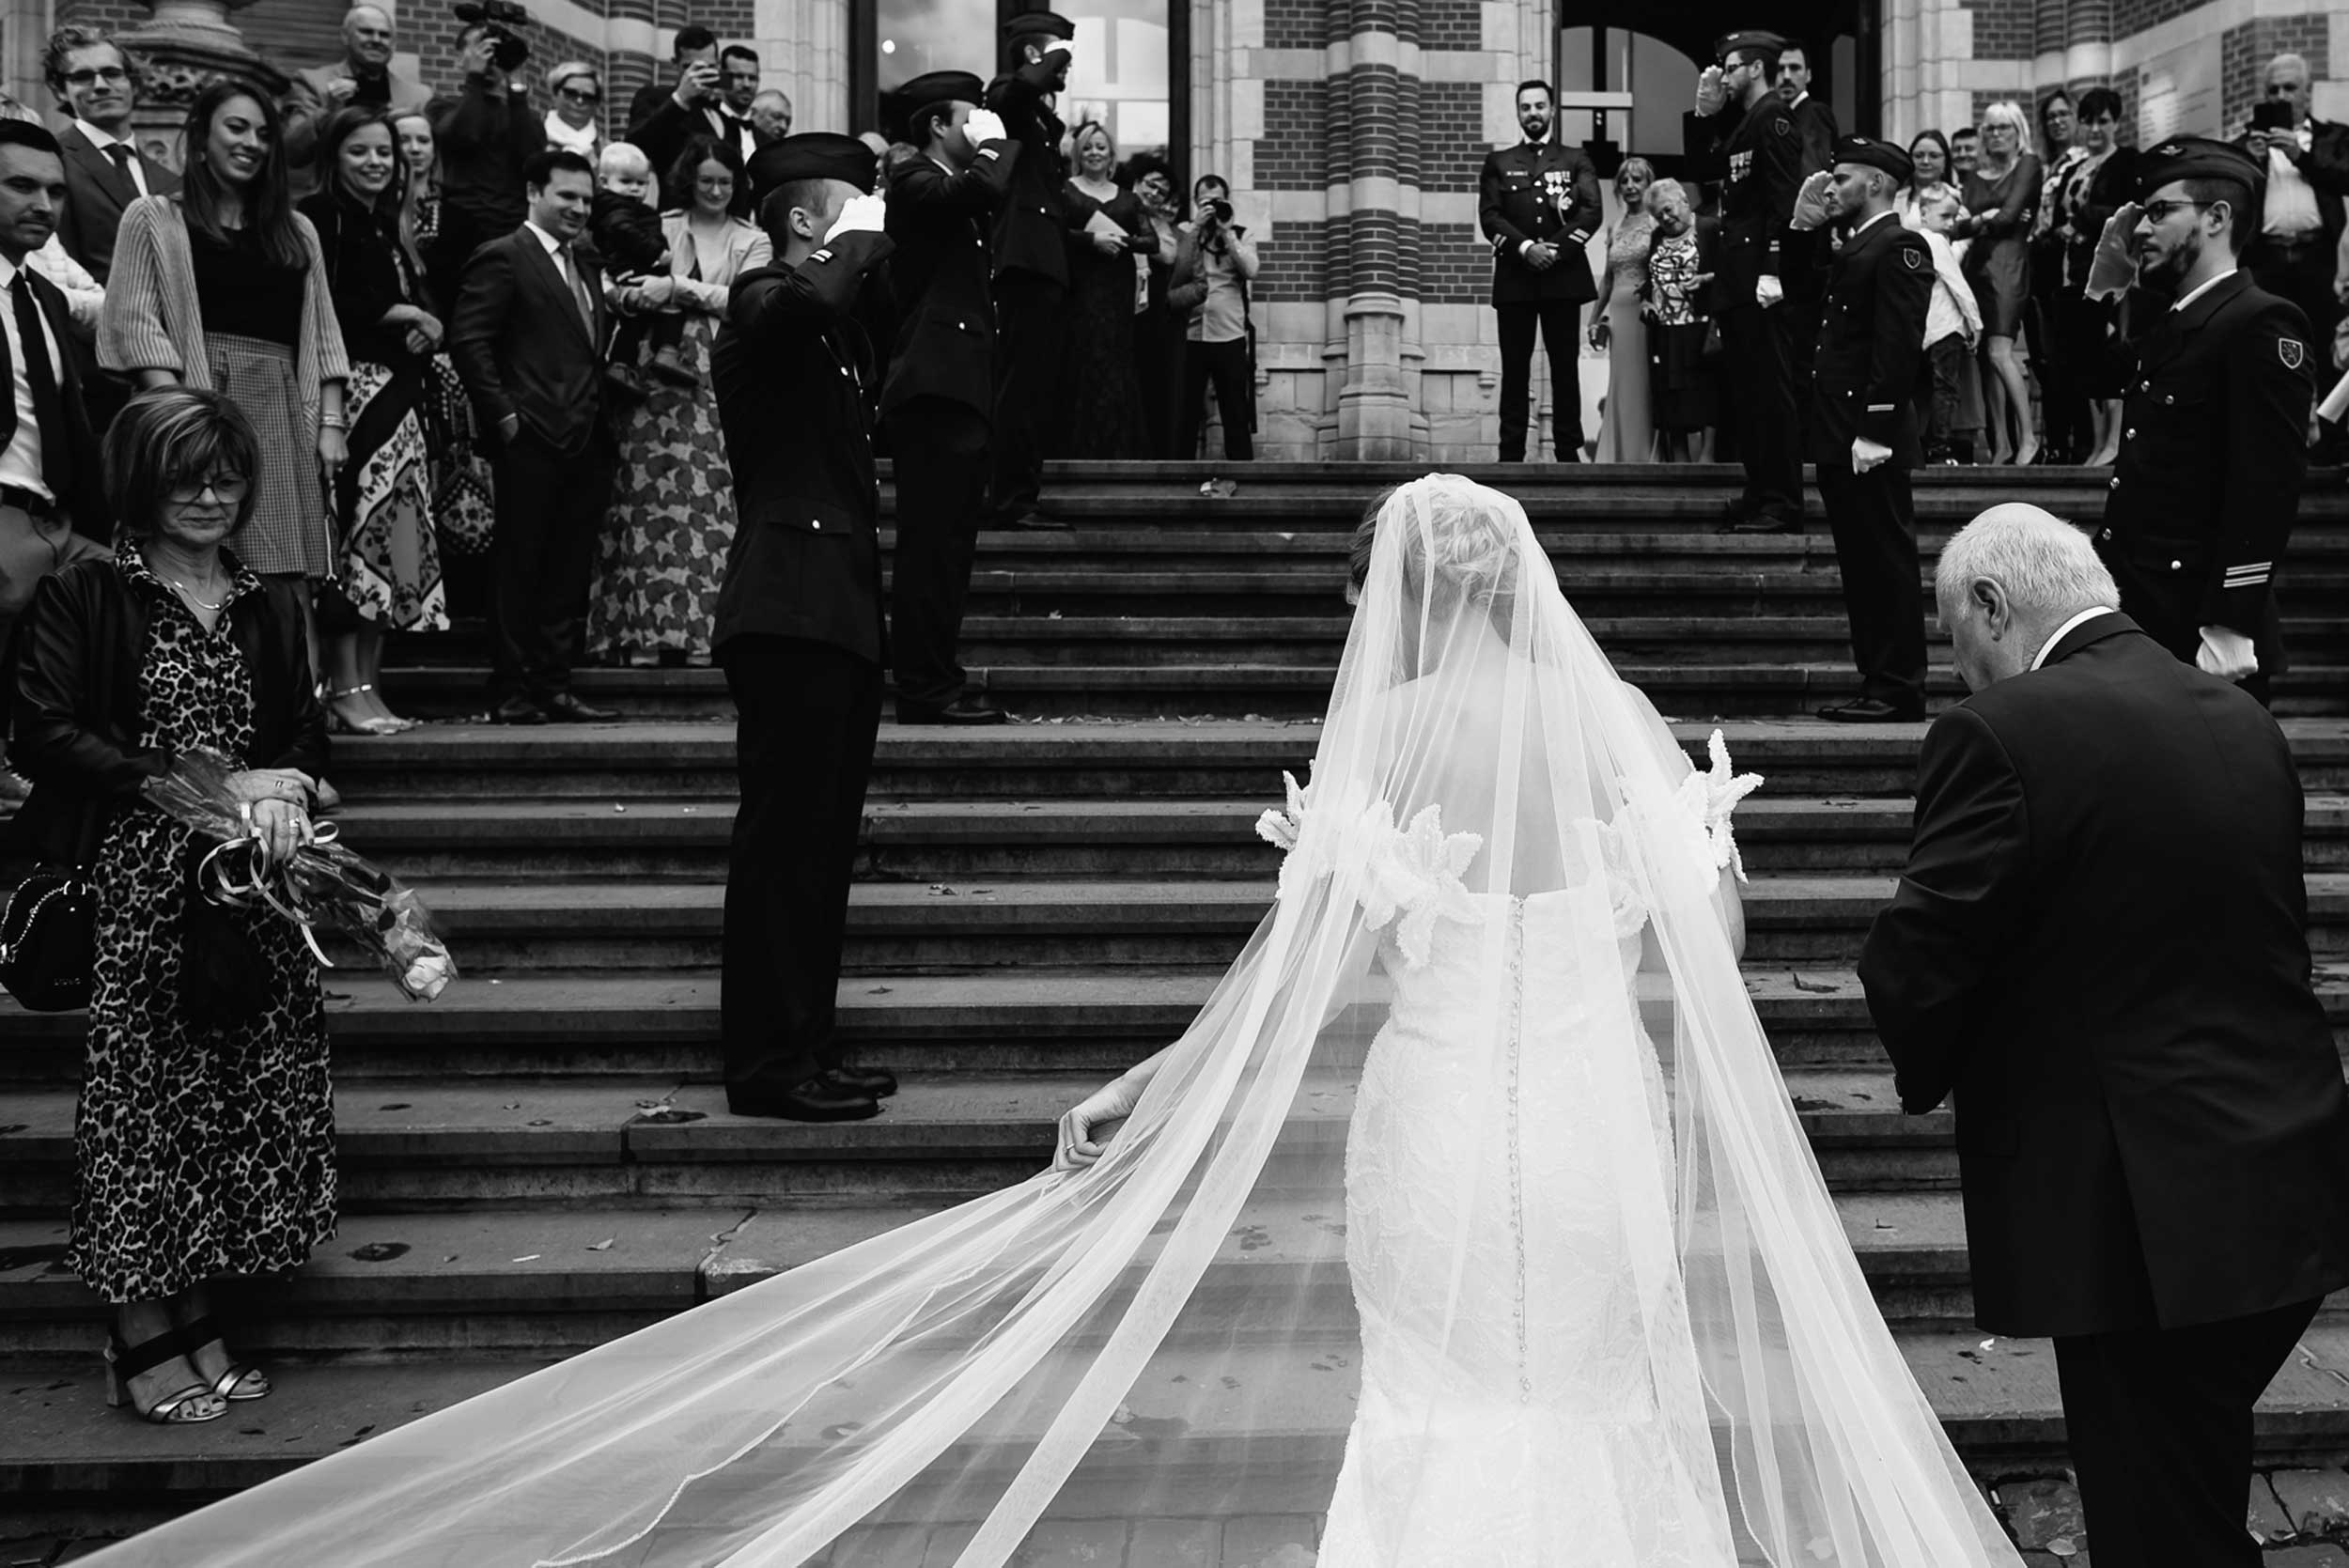 Eerbiedige Saluut: Militair huwelijk, het korps salueert terwijl de bruid de trap van het stadhuis opwandelt; sfeervol zwart-wit met de bruid in haar witte kleren die fel contrasteren met de donkere militaire uniformen.